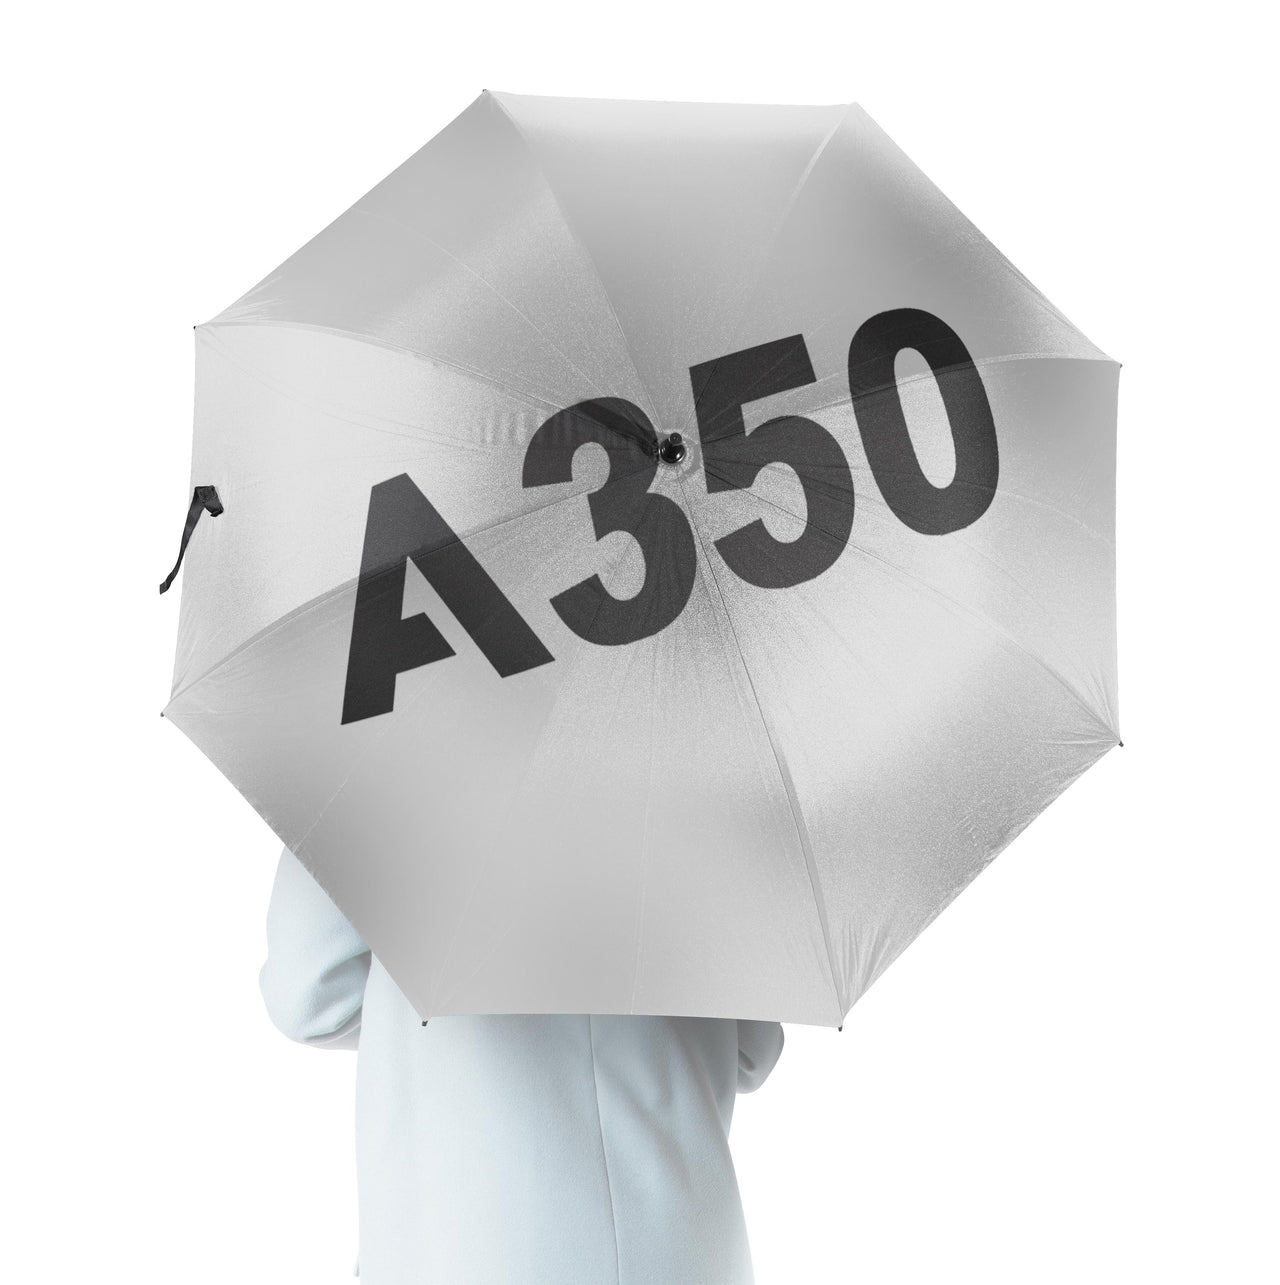 A350 Flat Text Designed Umbrella